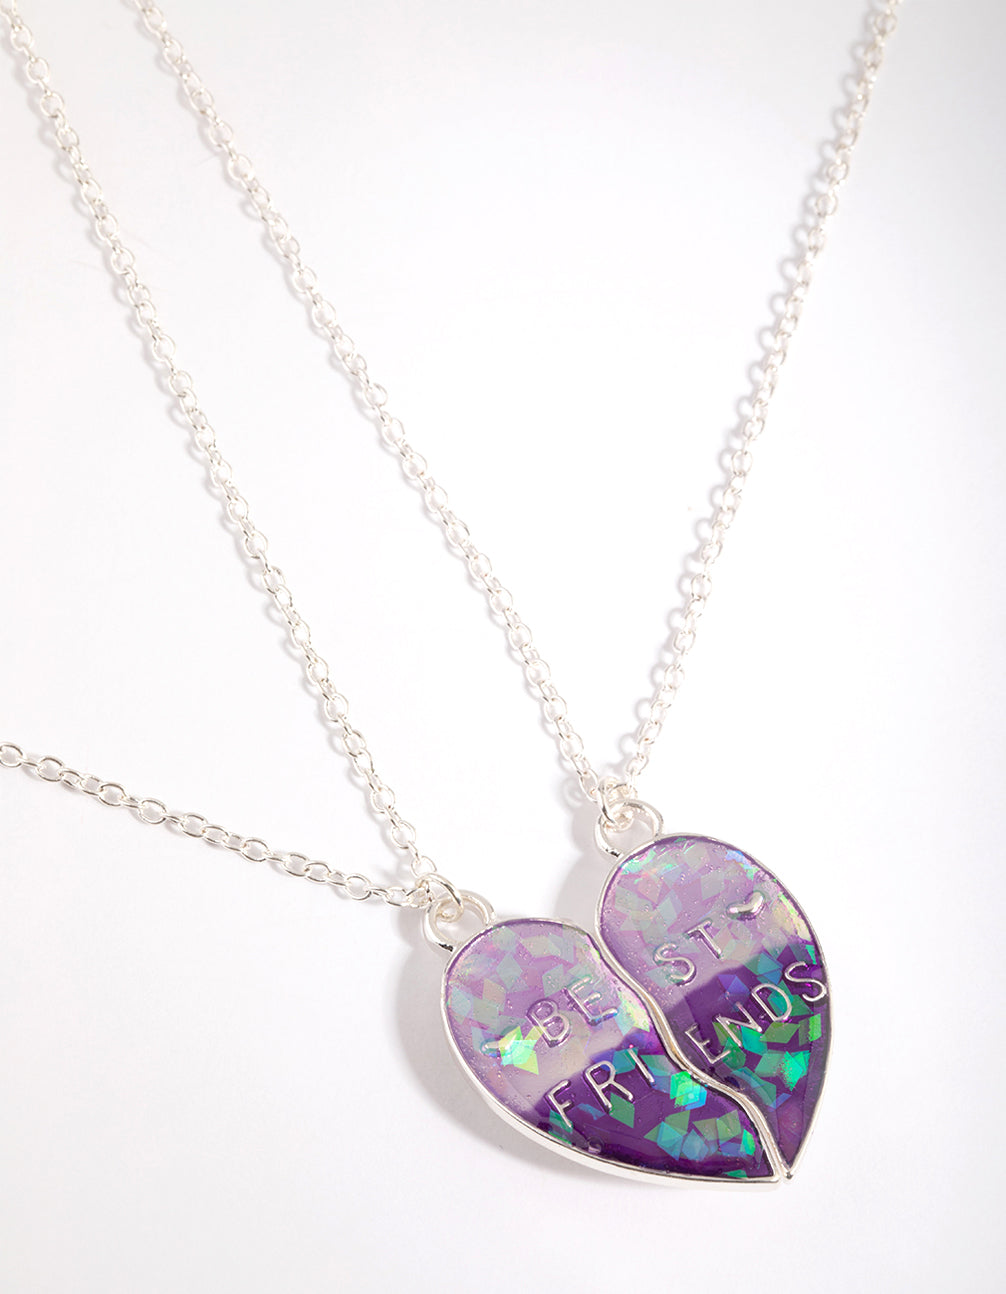 Best Friends Mood Chevron Heart Pendant Necklaces - 2 Pack | Claire's